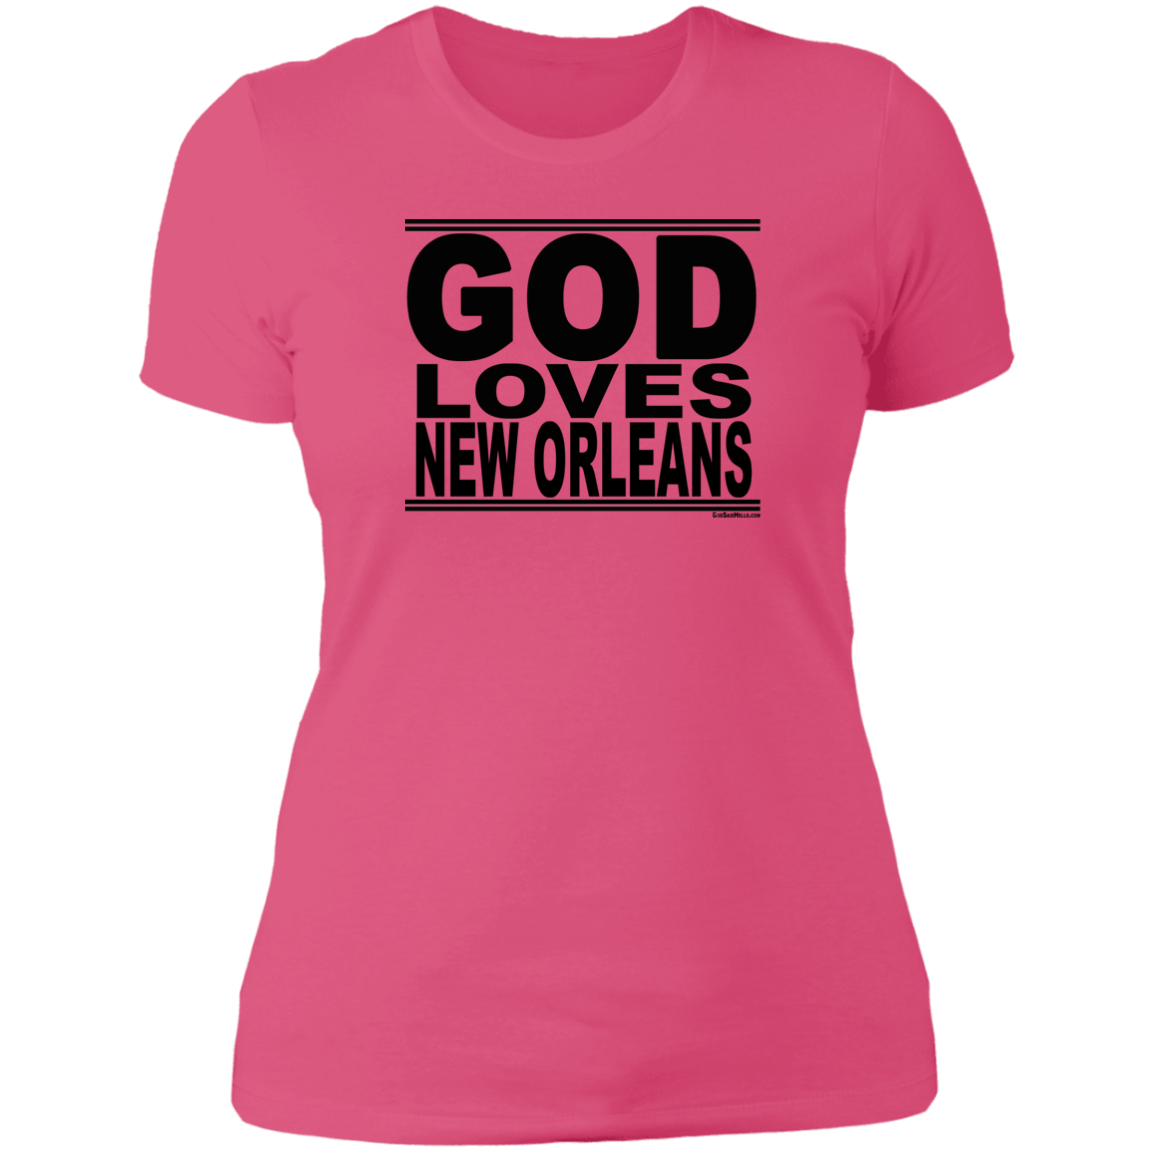 #GodLovesNewOrleans - Women's Shortsleeve Tee